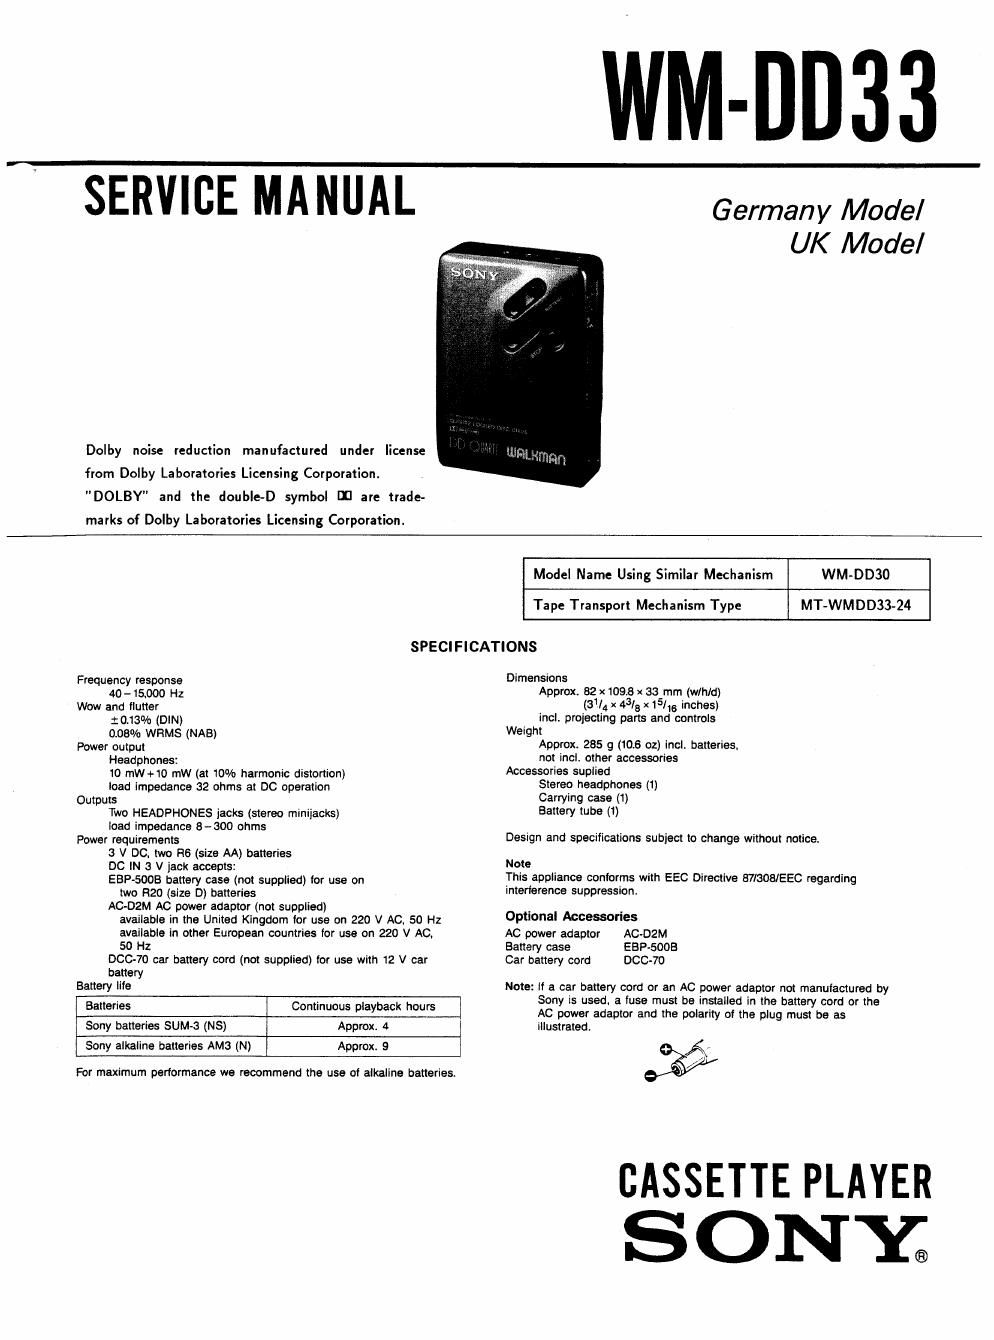 sony wm dd 33 service manual